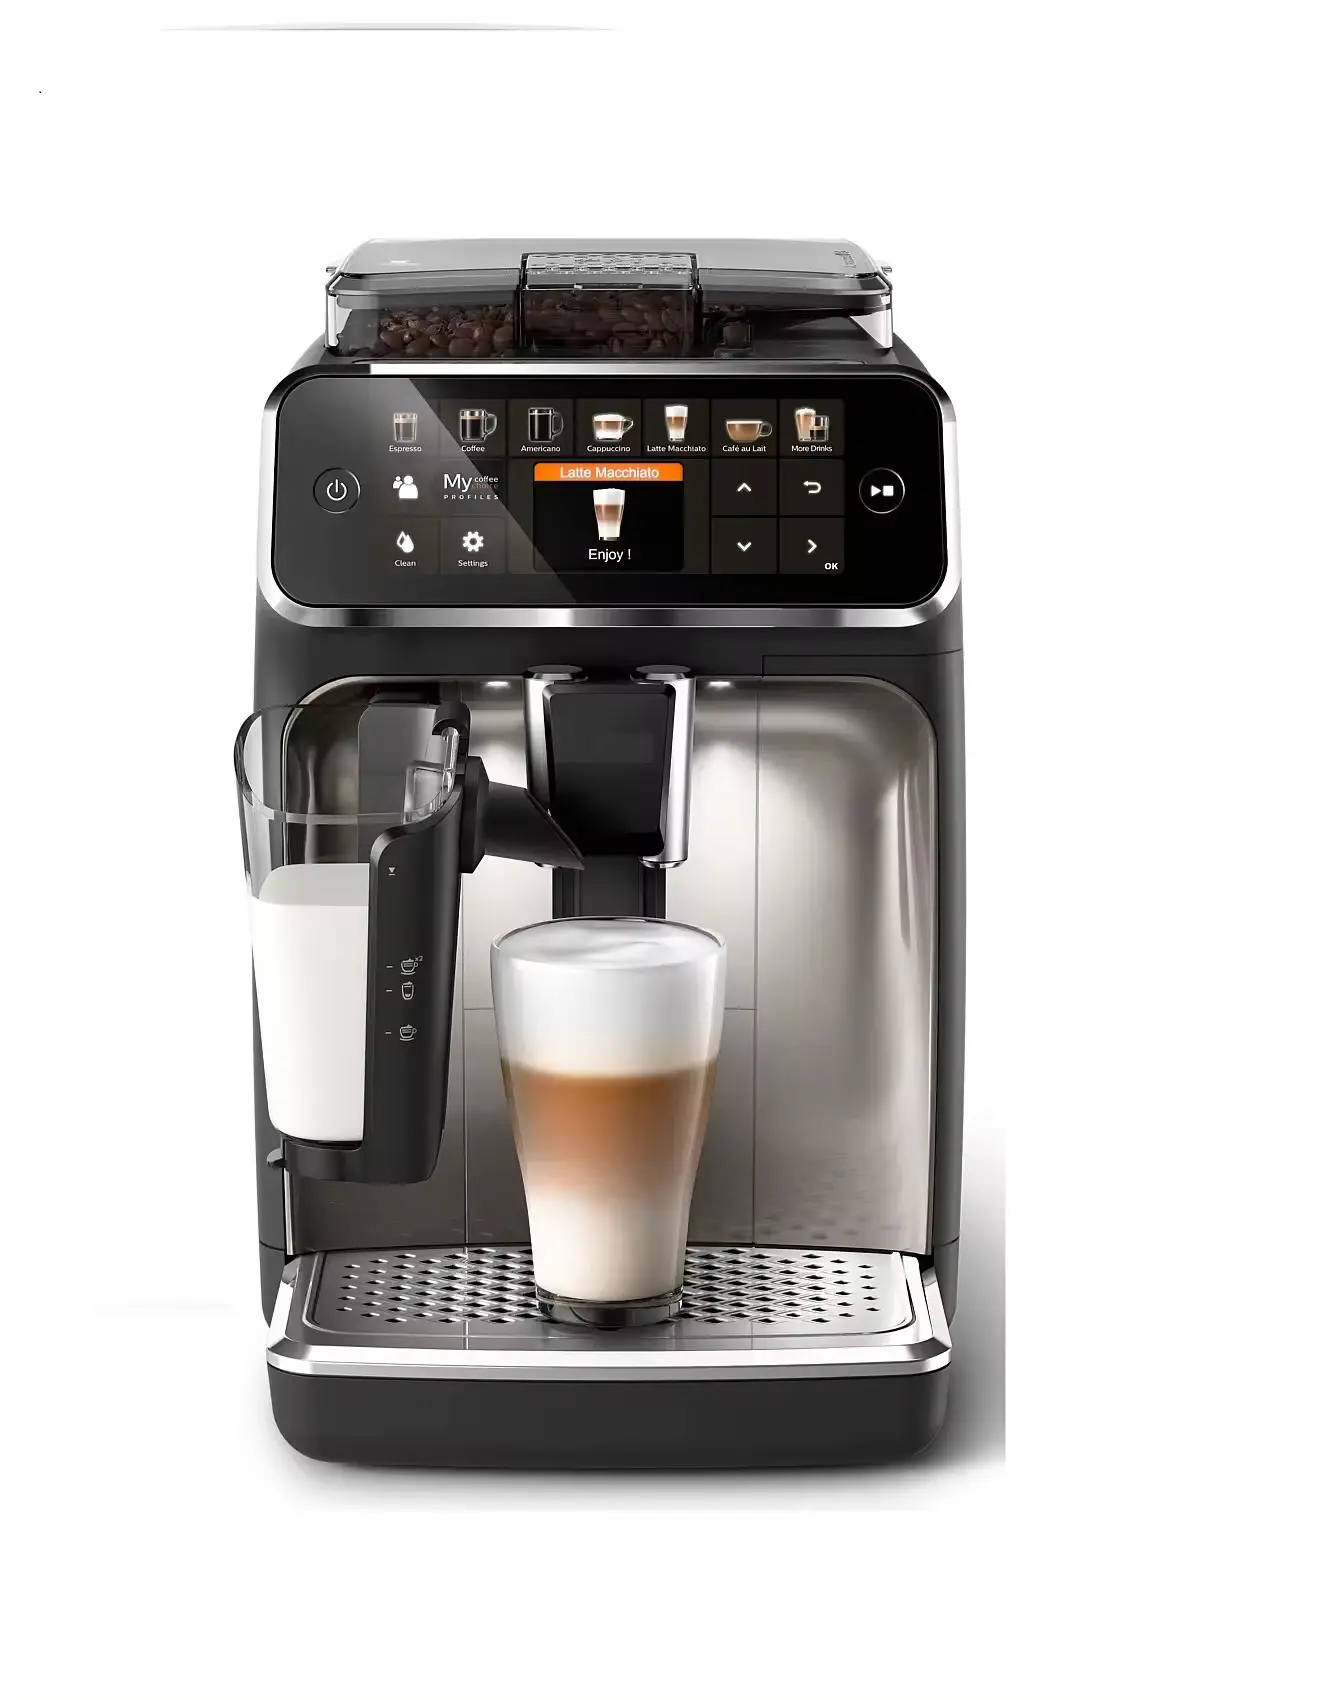 Nova máquina de café expresso totalmente automática Phil' lips série 5400 - Latte Go mais vendida